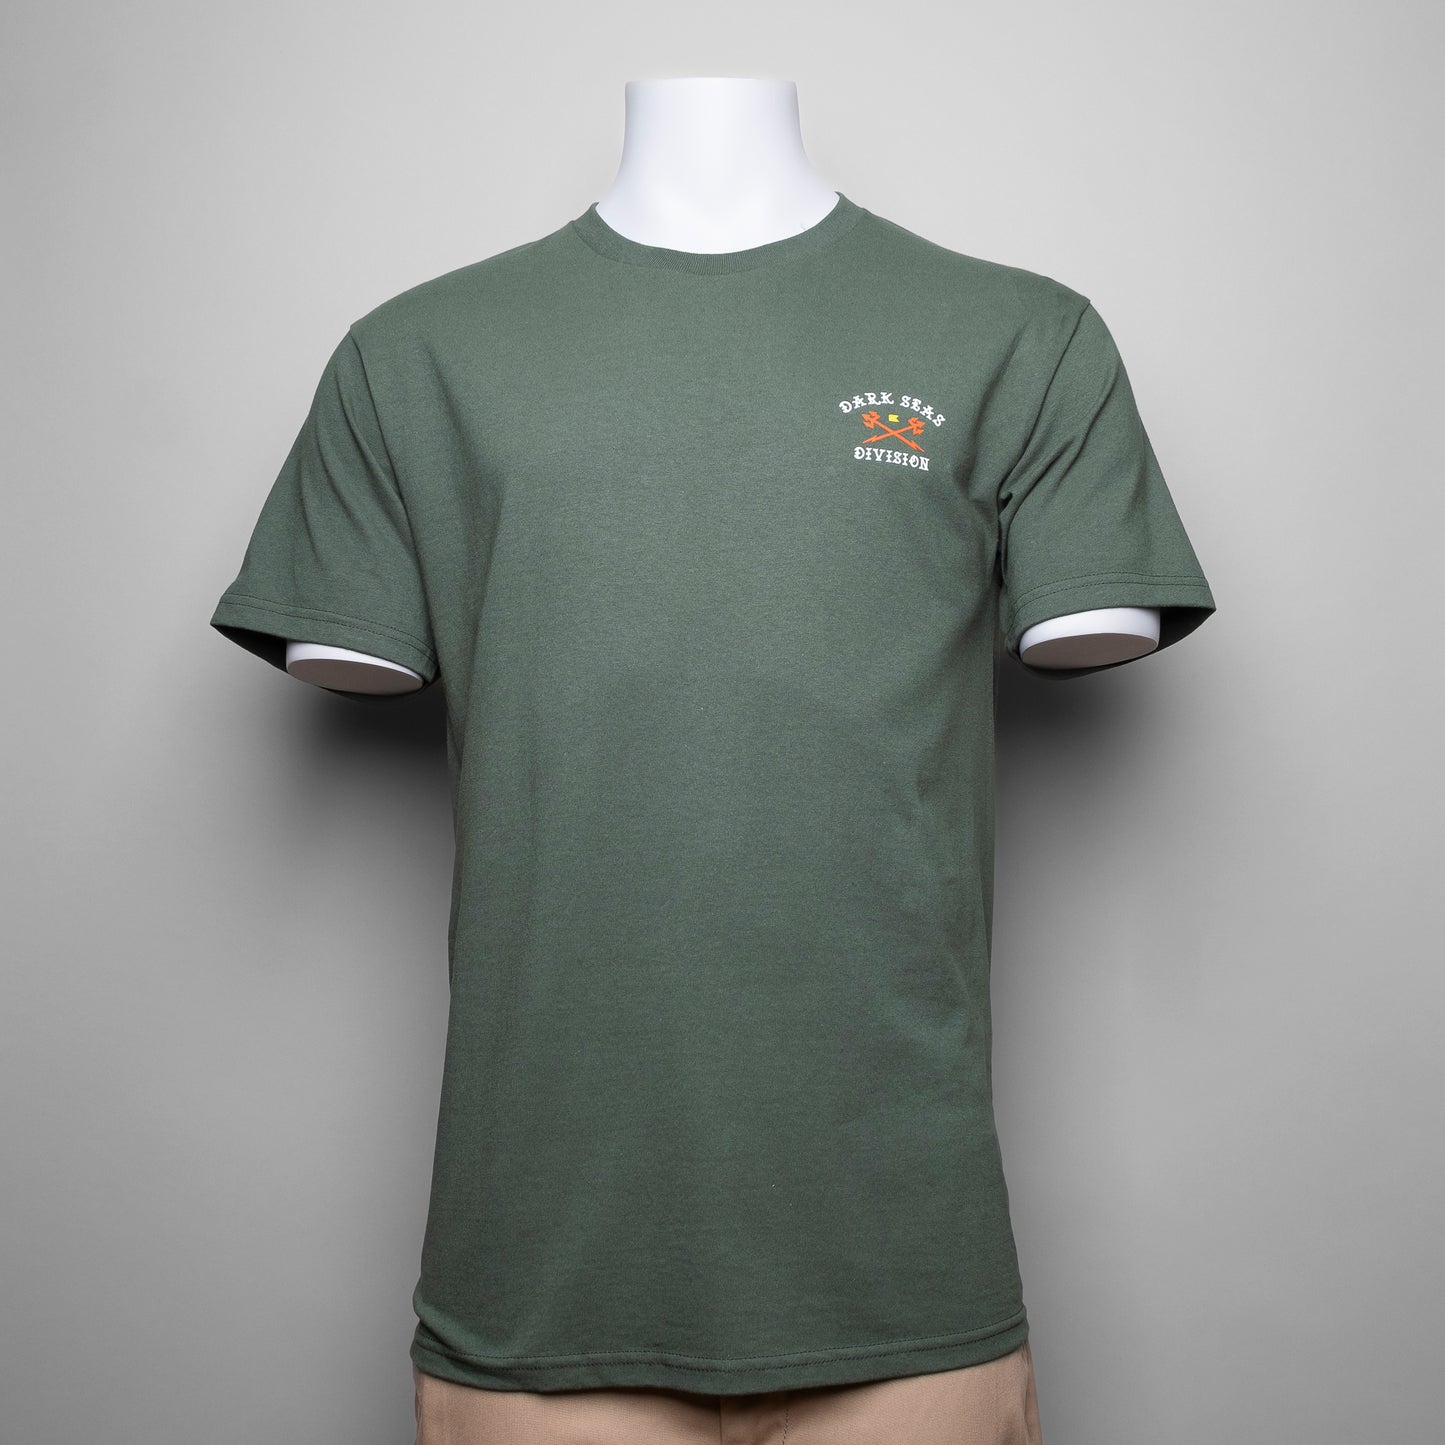 Das Dark Seas Defender Shirt in einem dunkleren Grün ist mit einem kleinen Front-Print & einem Speziellen Back-Print versehen